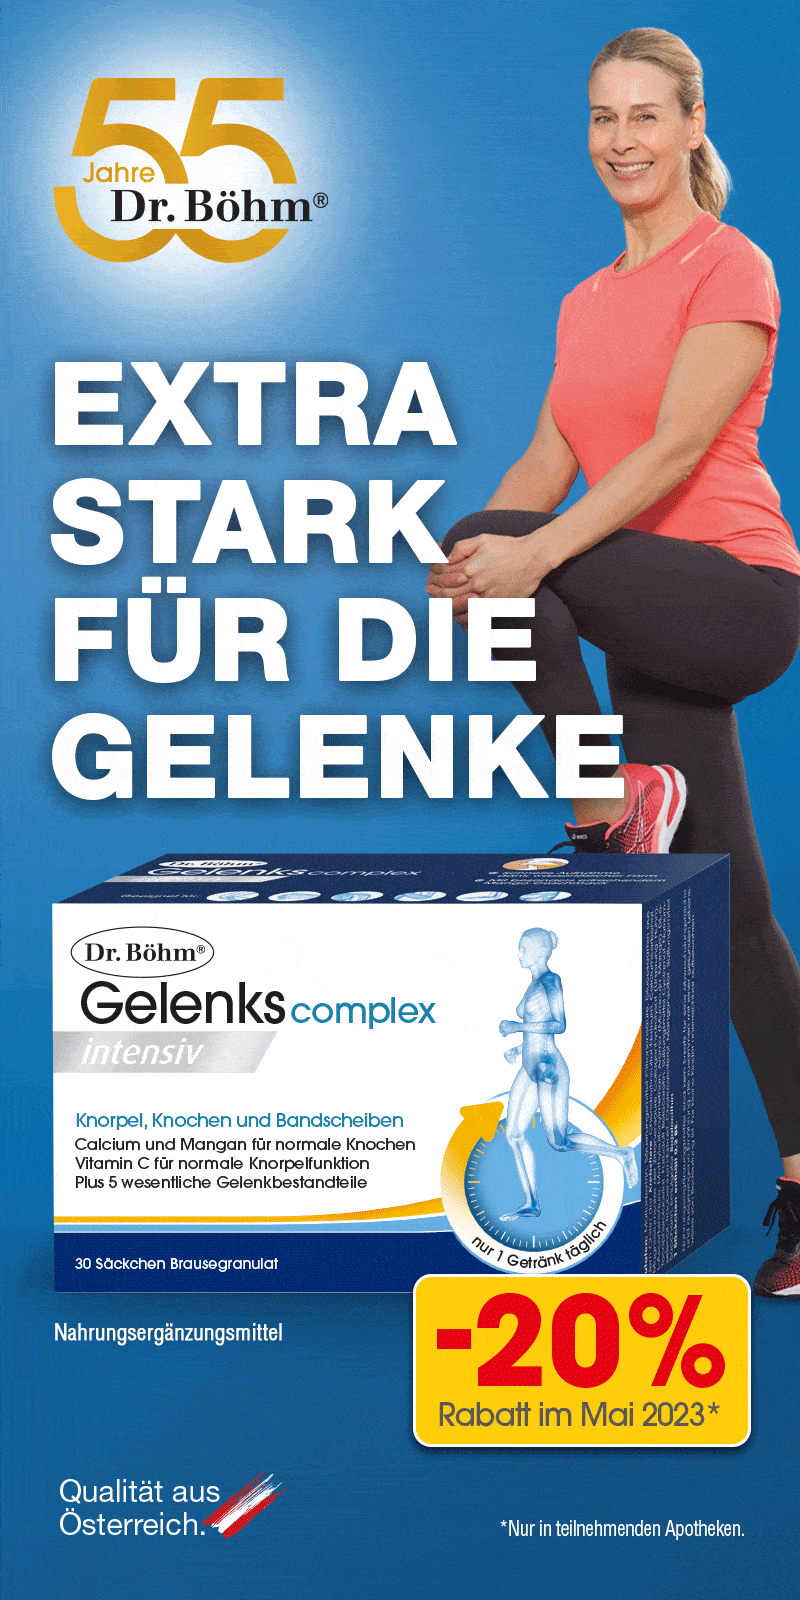 Extra stark für die Gelenke - Dr. Böhm Gelenks complex